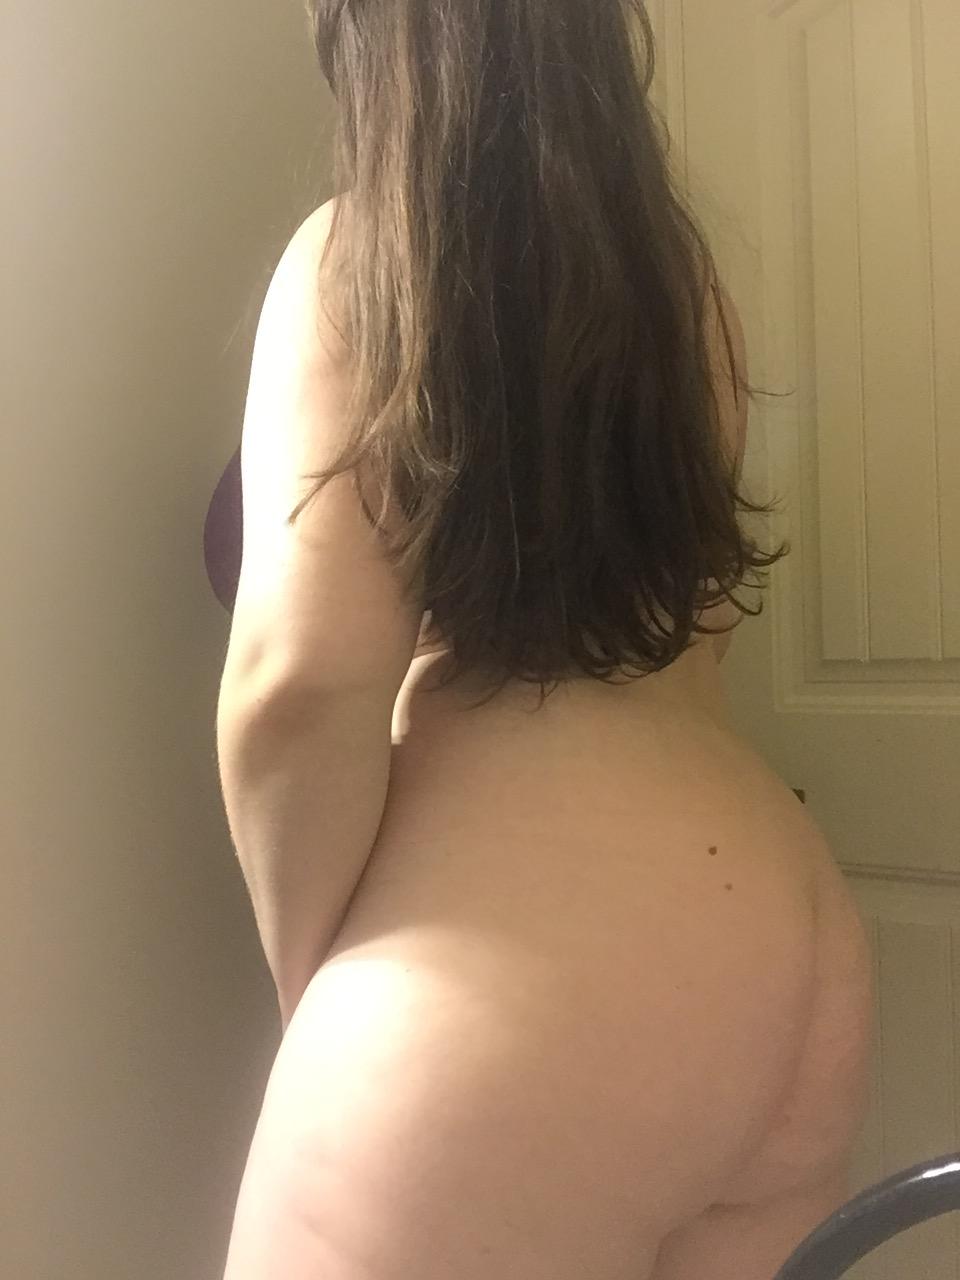 My ass needs attention...